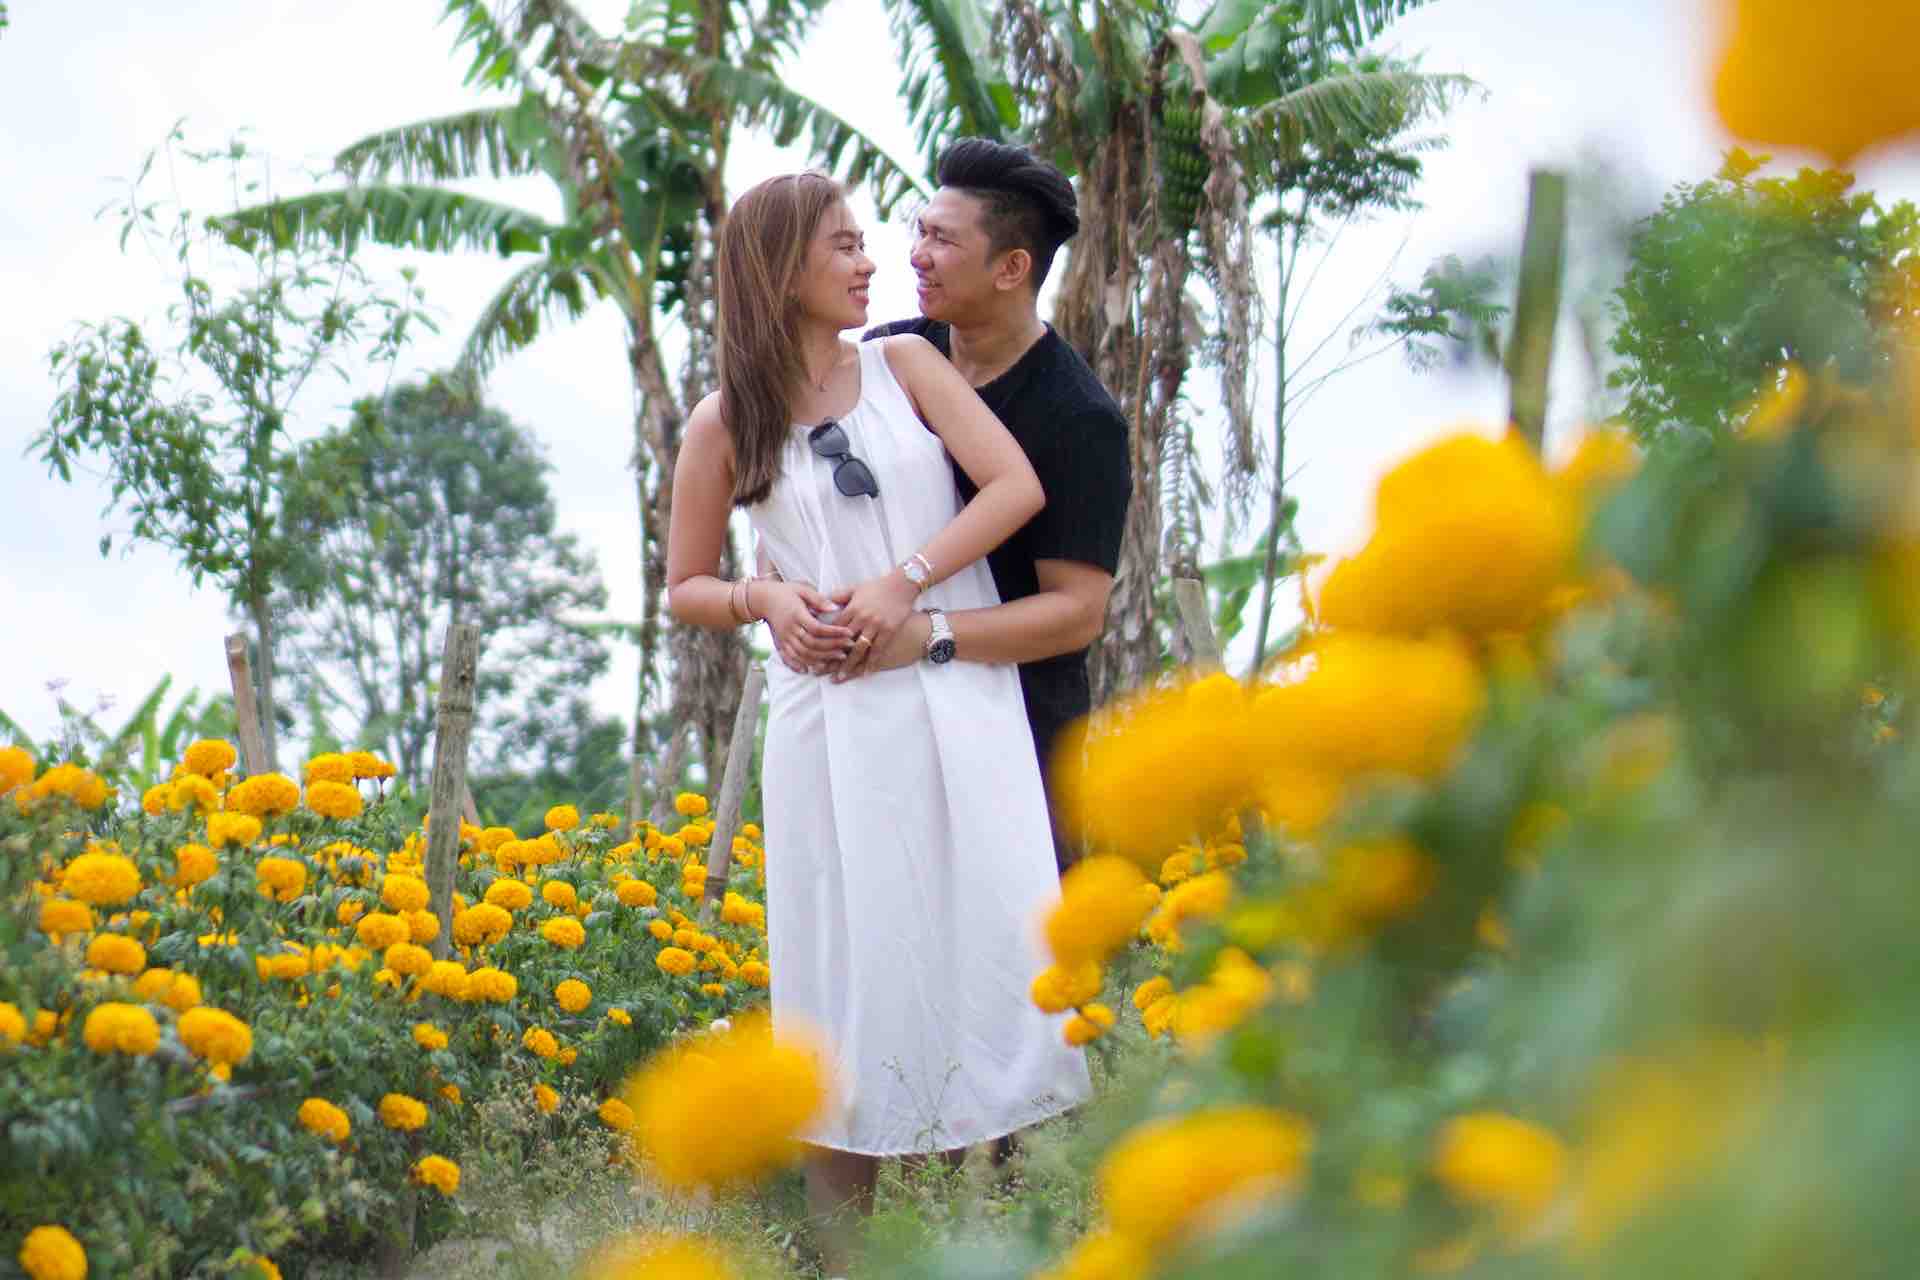 Bali Instagram Tour c ouple in flower field